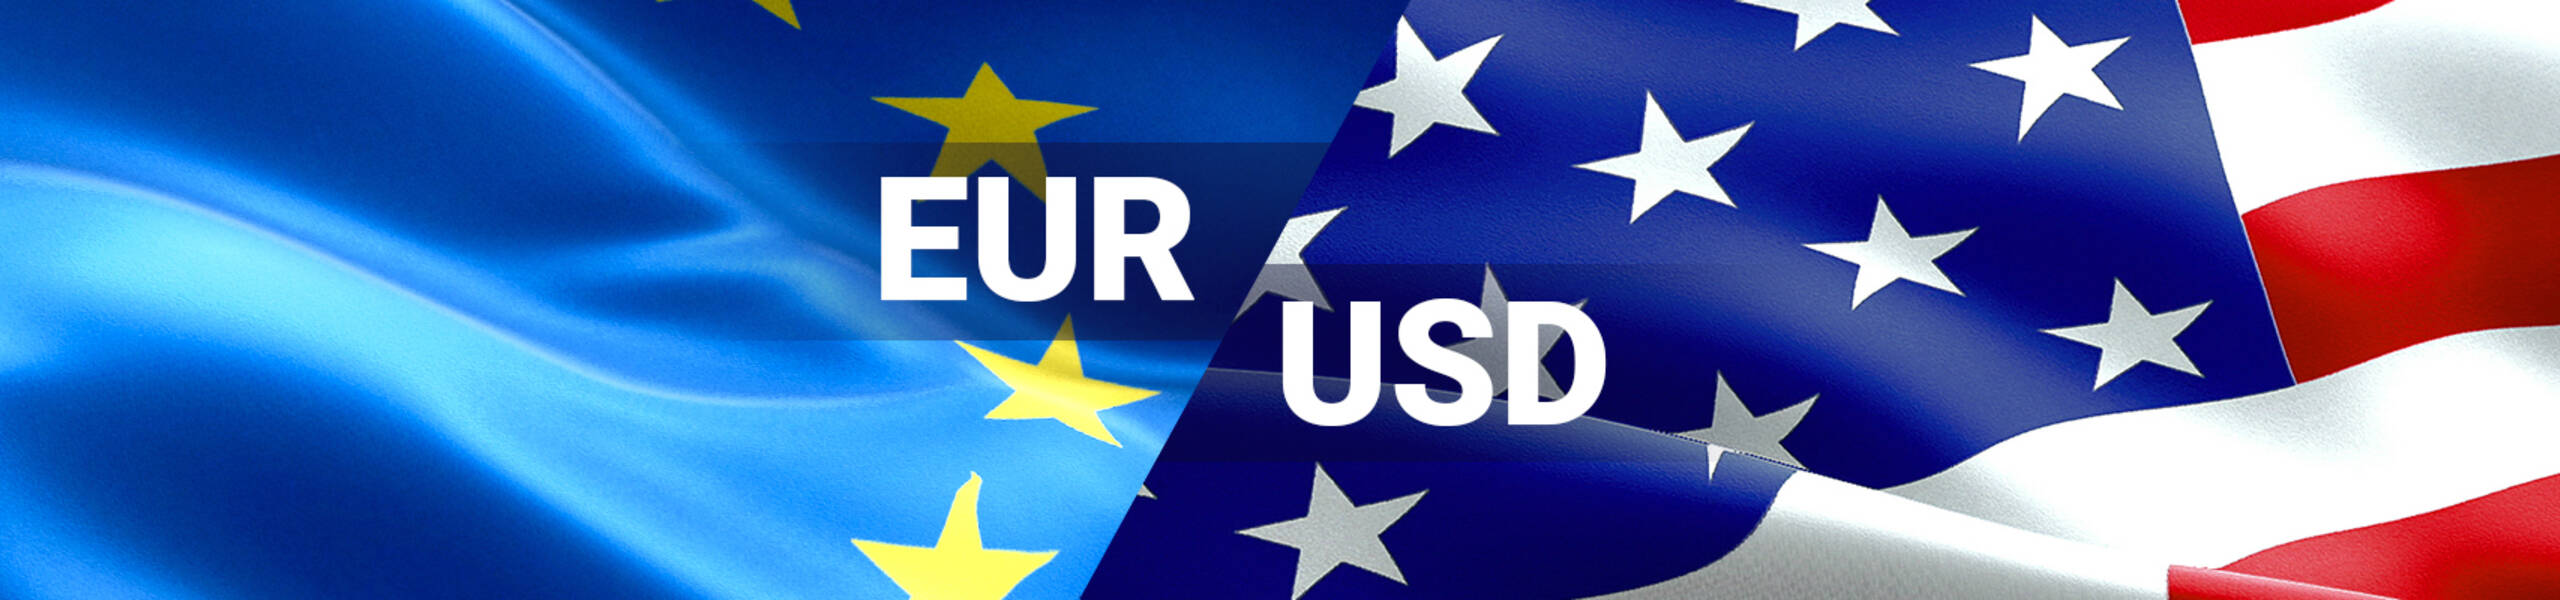 EUR/USD: on 4W-lows